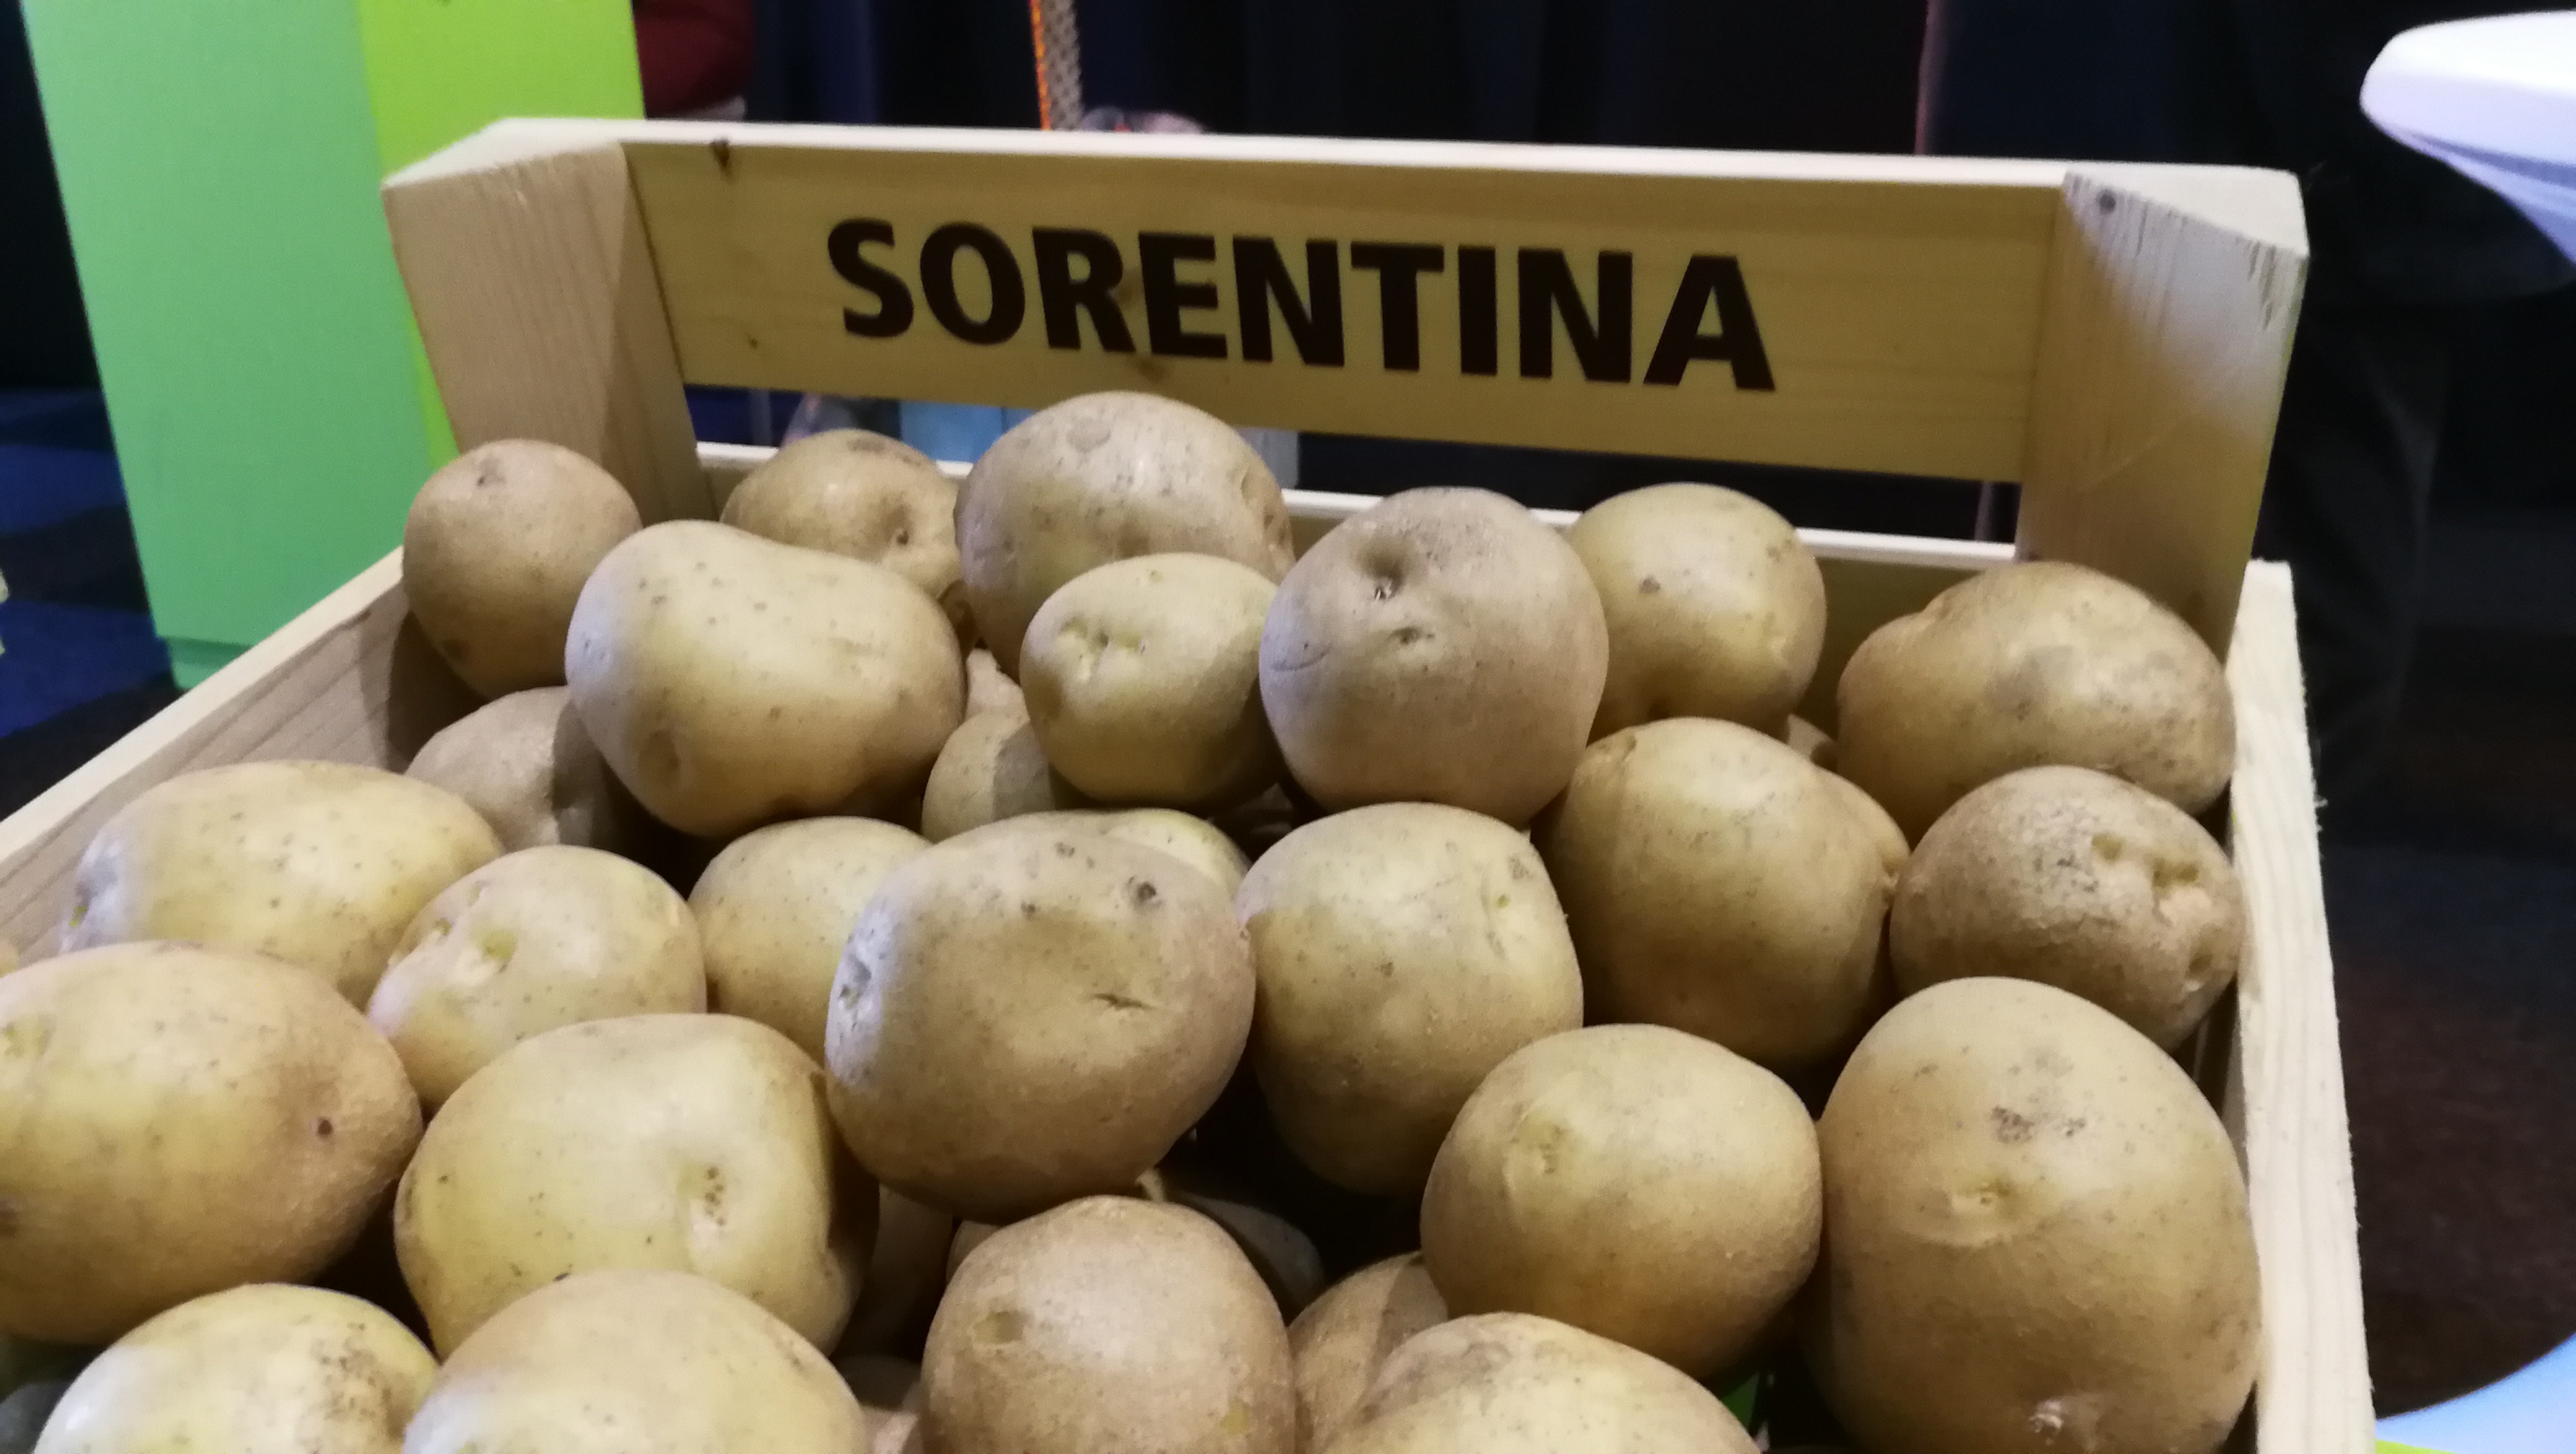 Burgonya vetőgumó chips készítéshez "Sorentina" 50 db